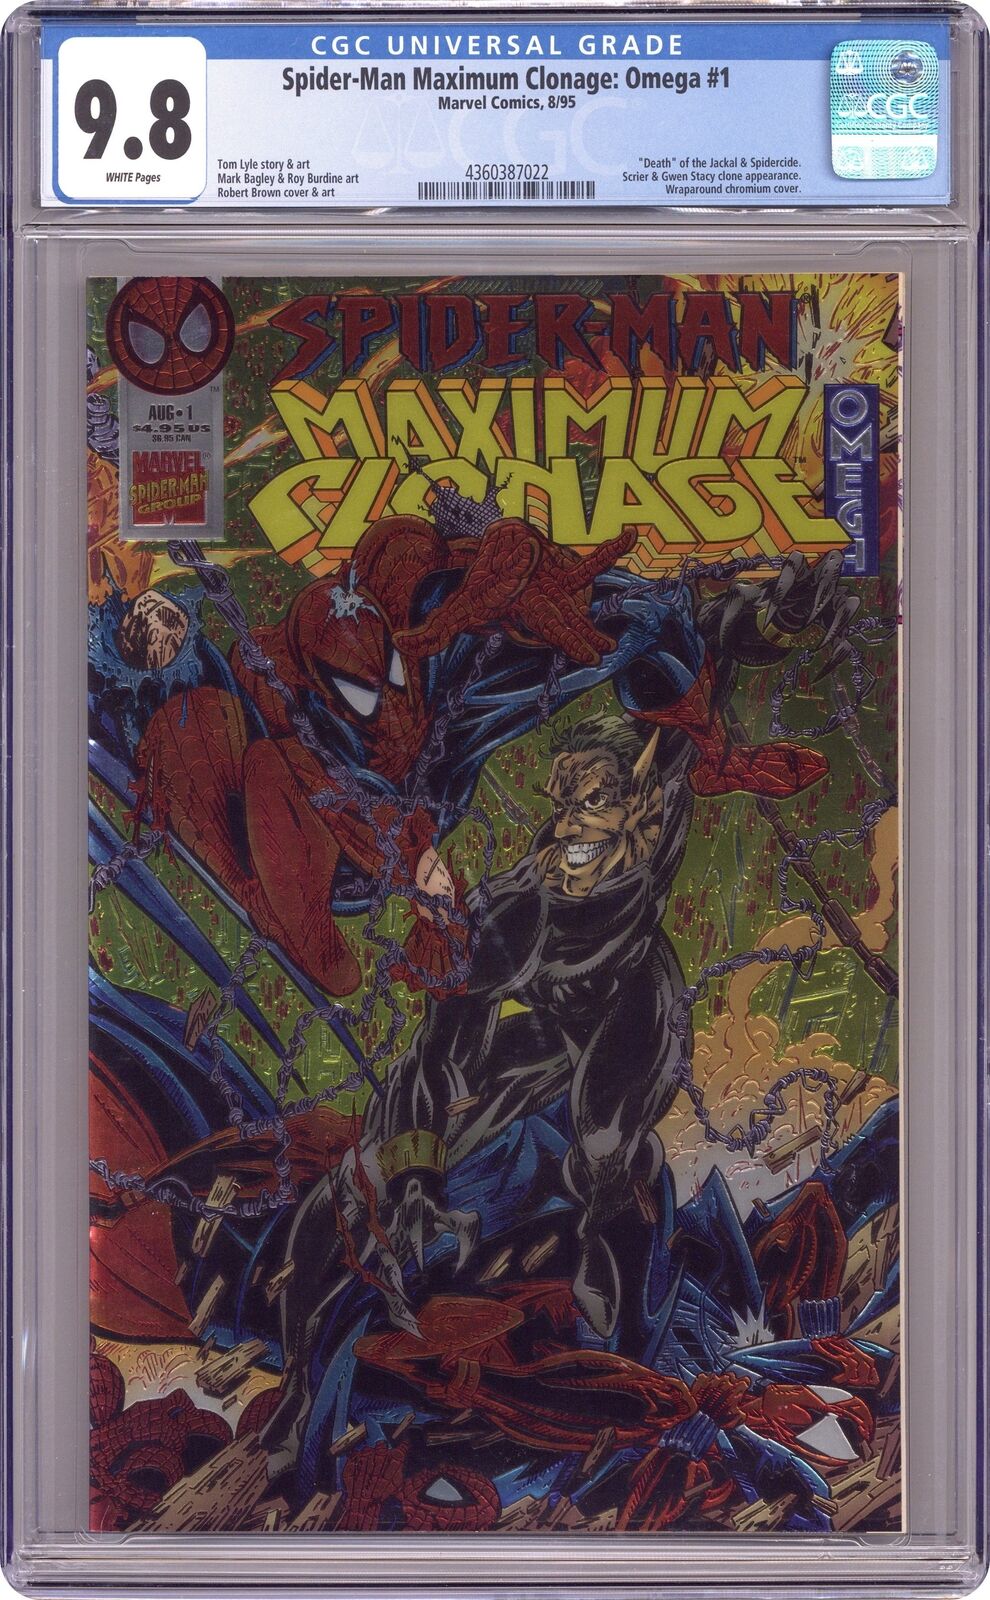 Spider-Man Maximum Clonage Omega #1 CGC 9.8 1995 4360387022